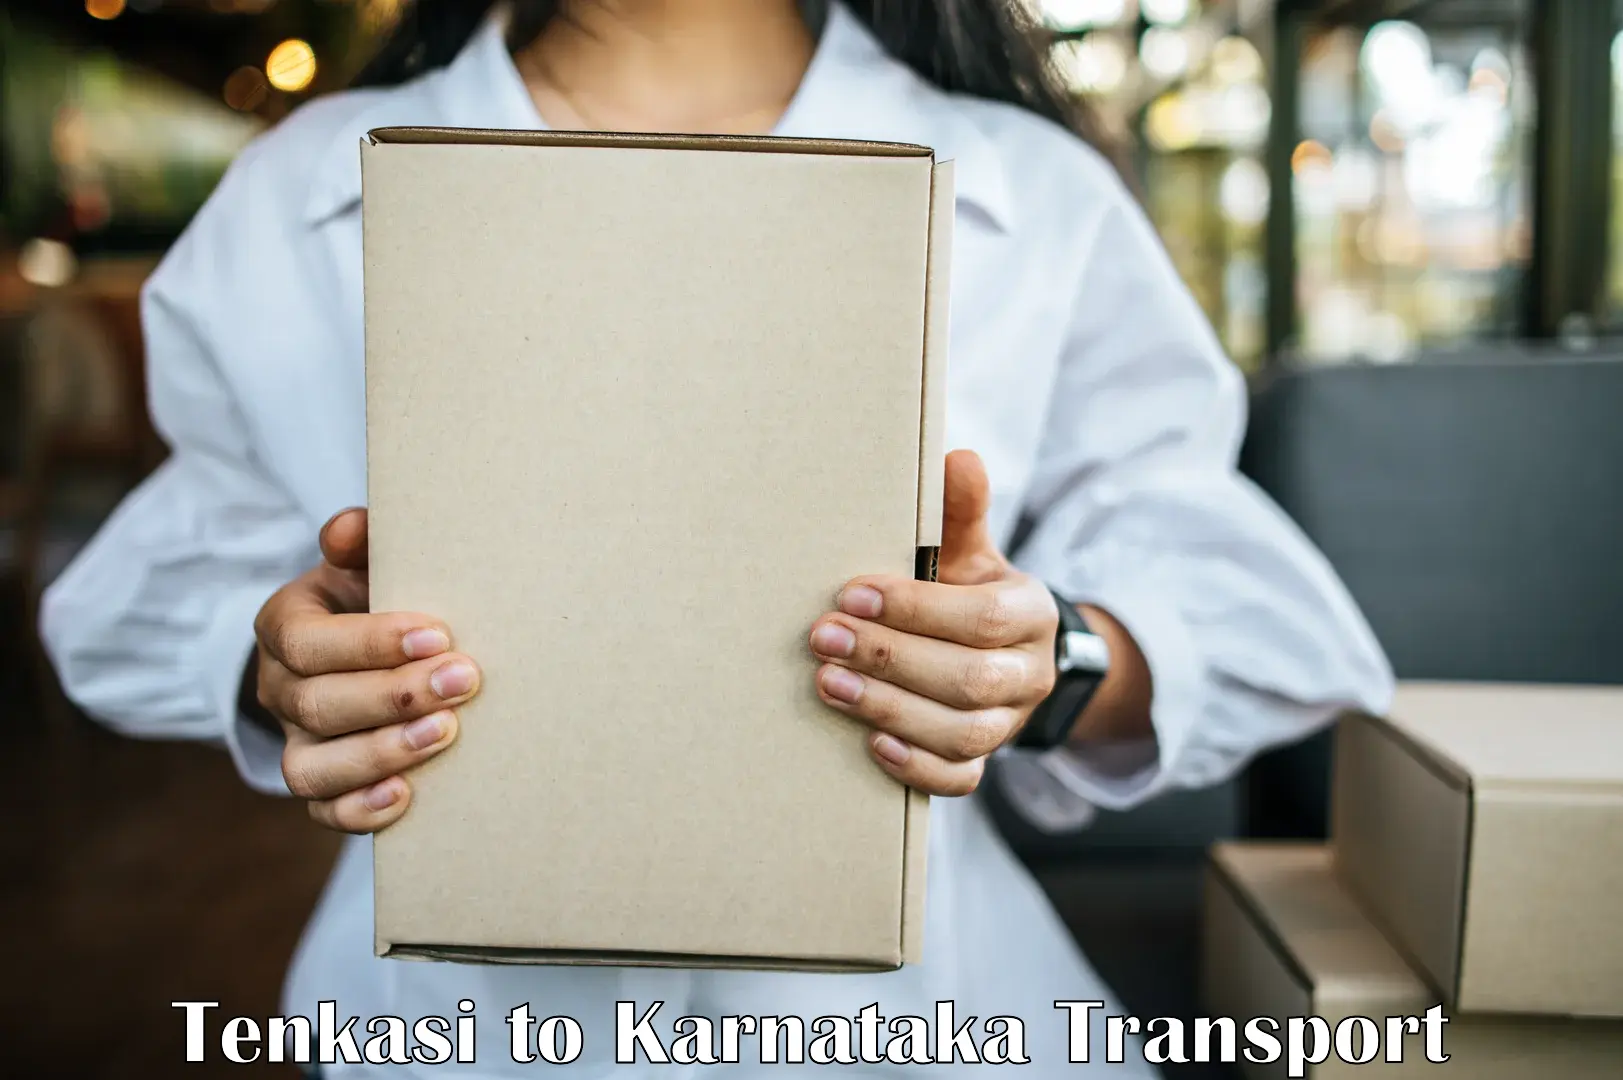 Transport in sharing Tenkasi to Koppal